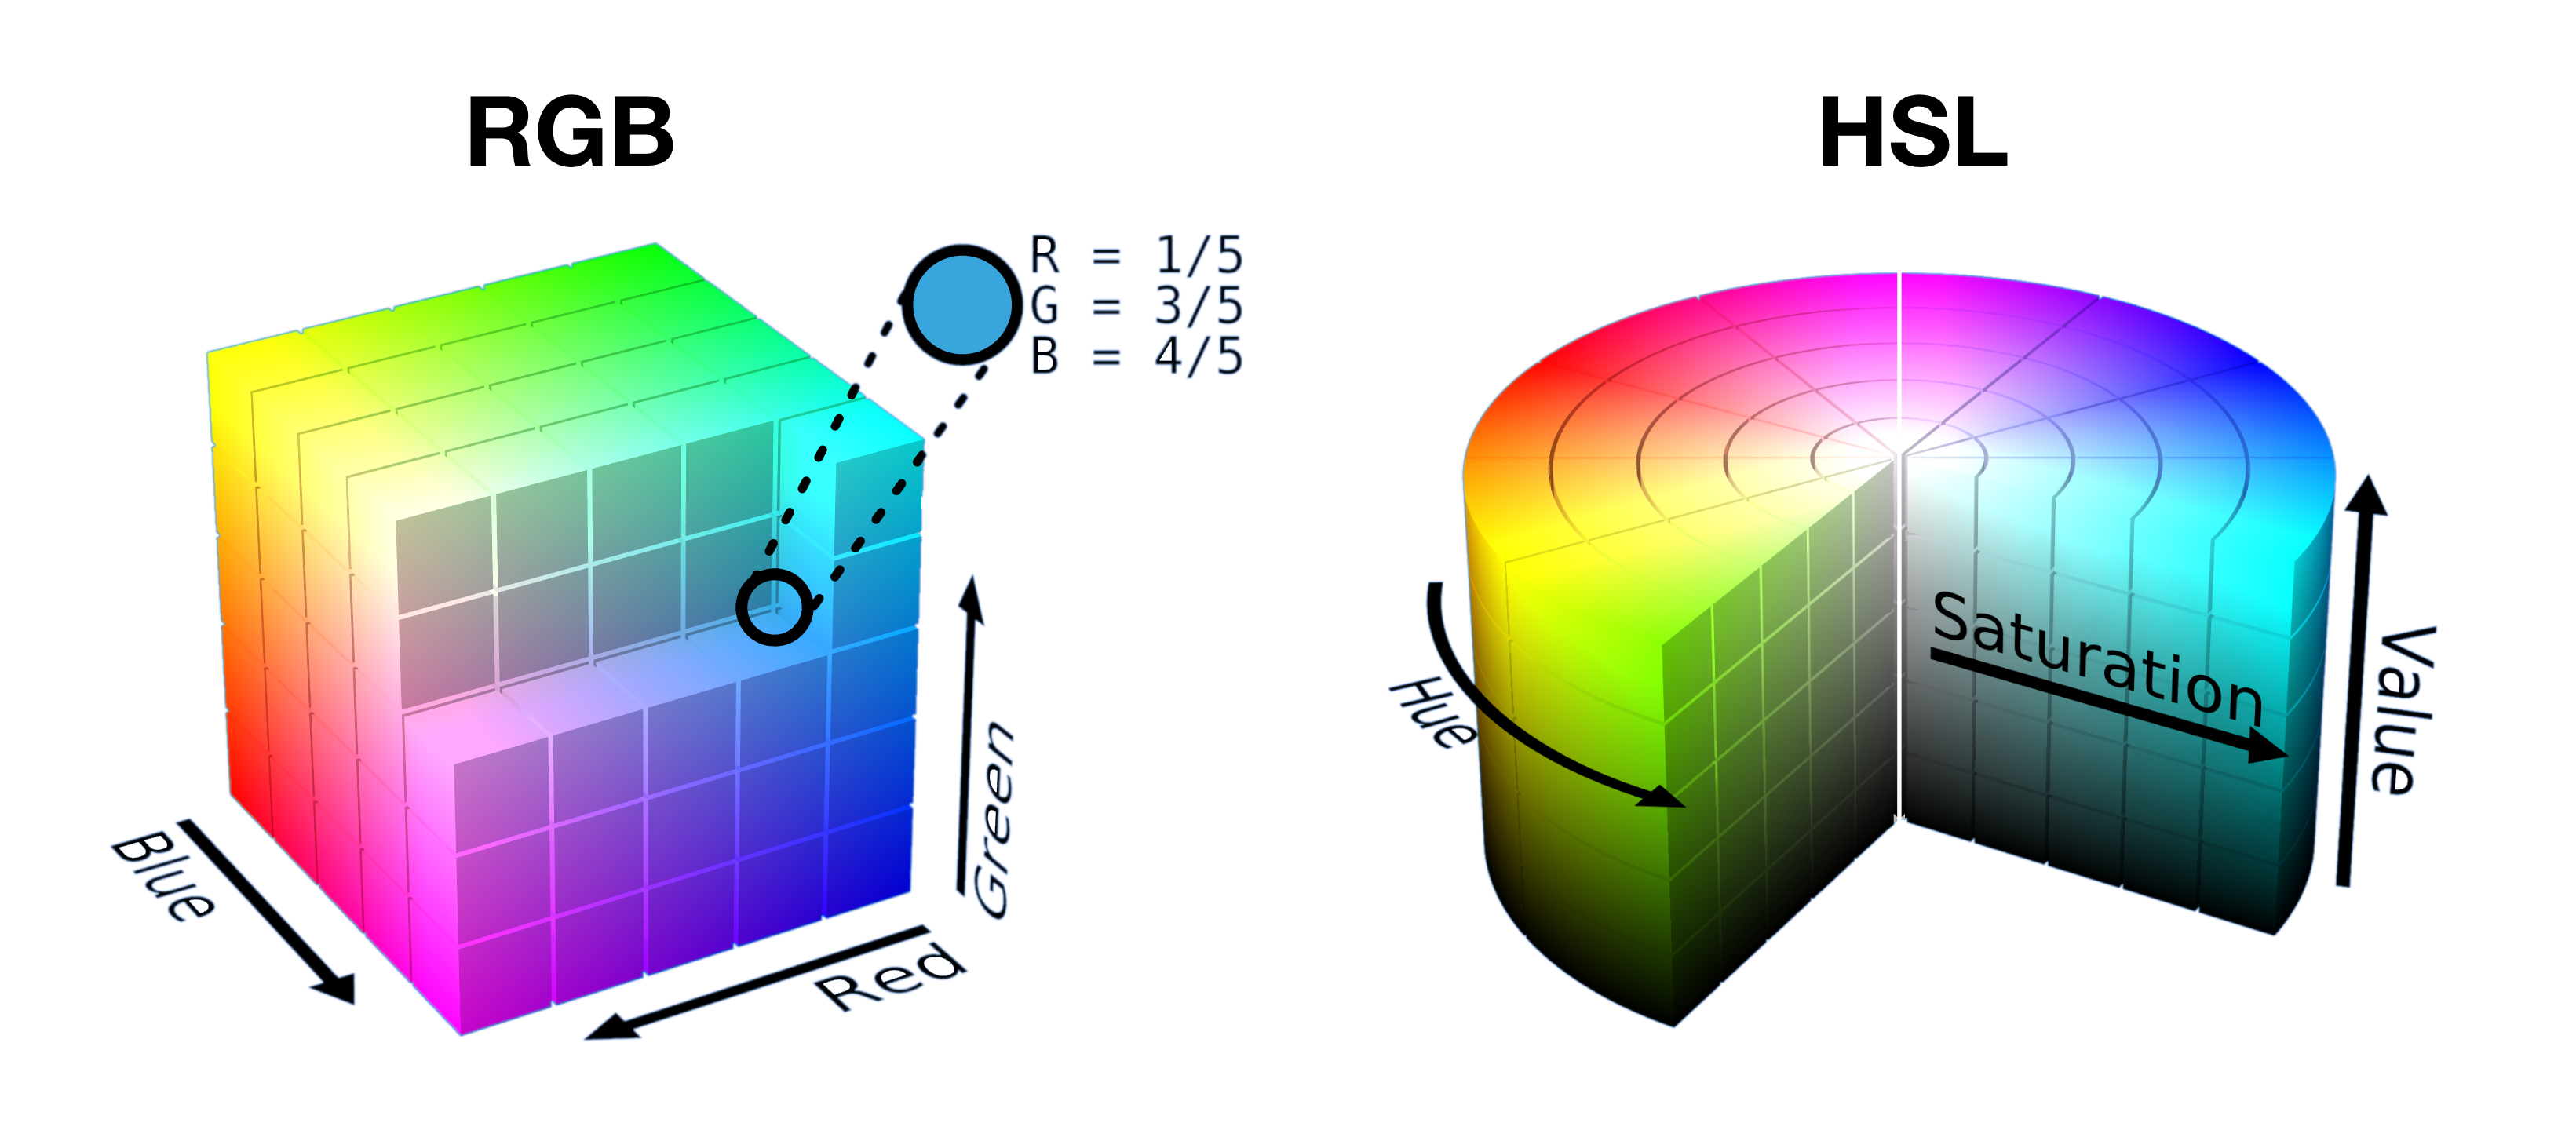 半切開的 RGB 立方體和切片是 HSL 圓柱體，會顯示在每個空間中如何將顏色包裝成形狀。